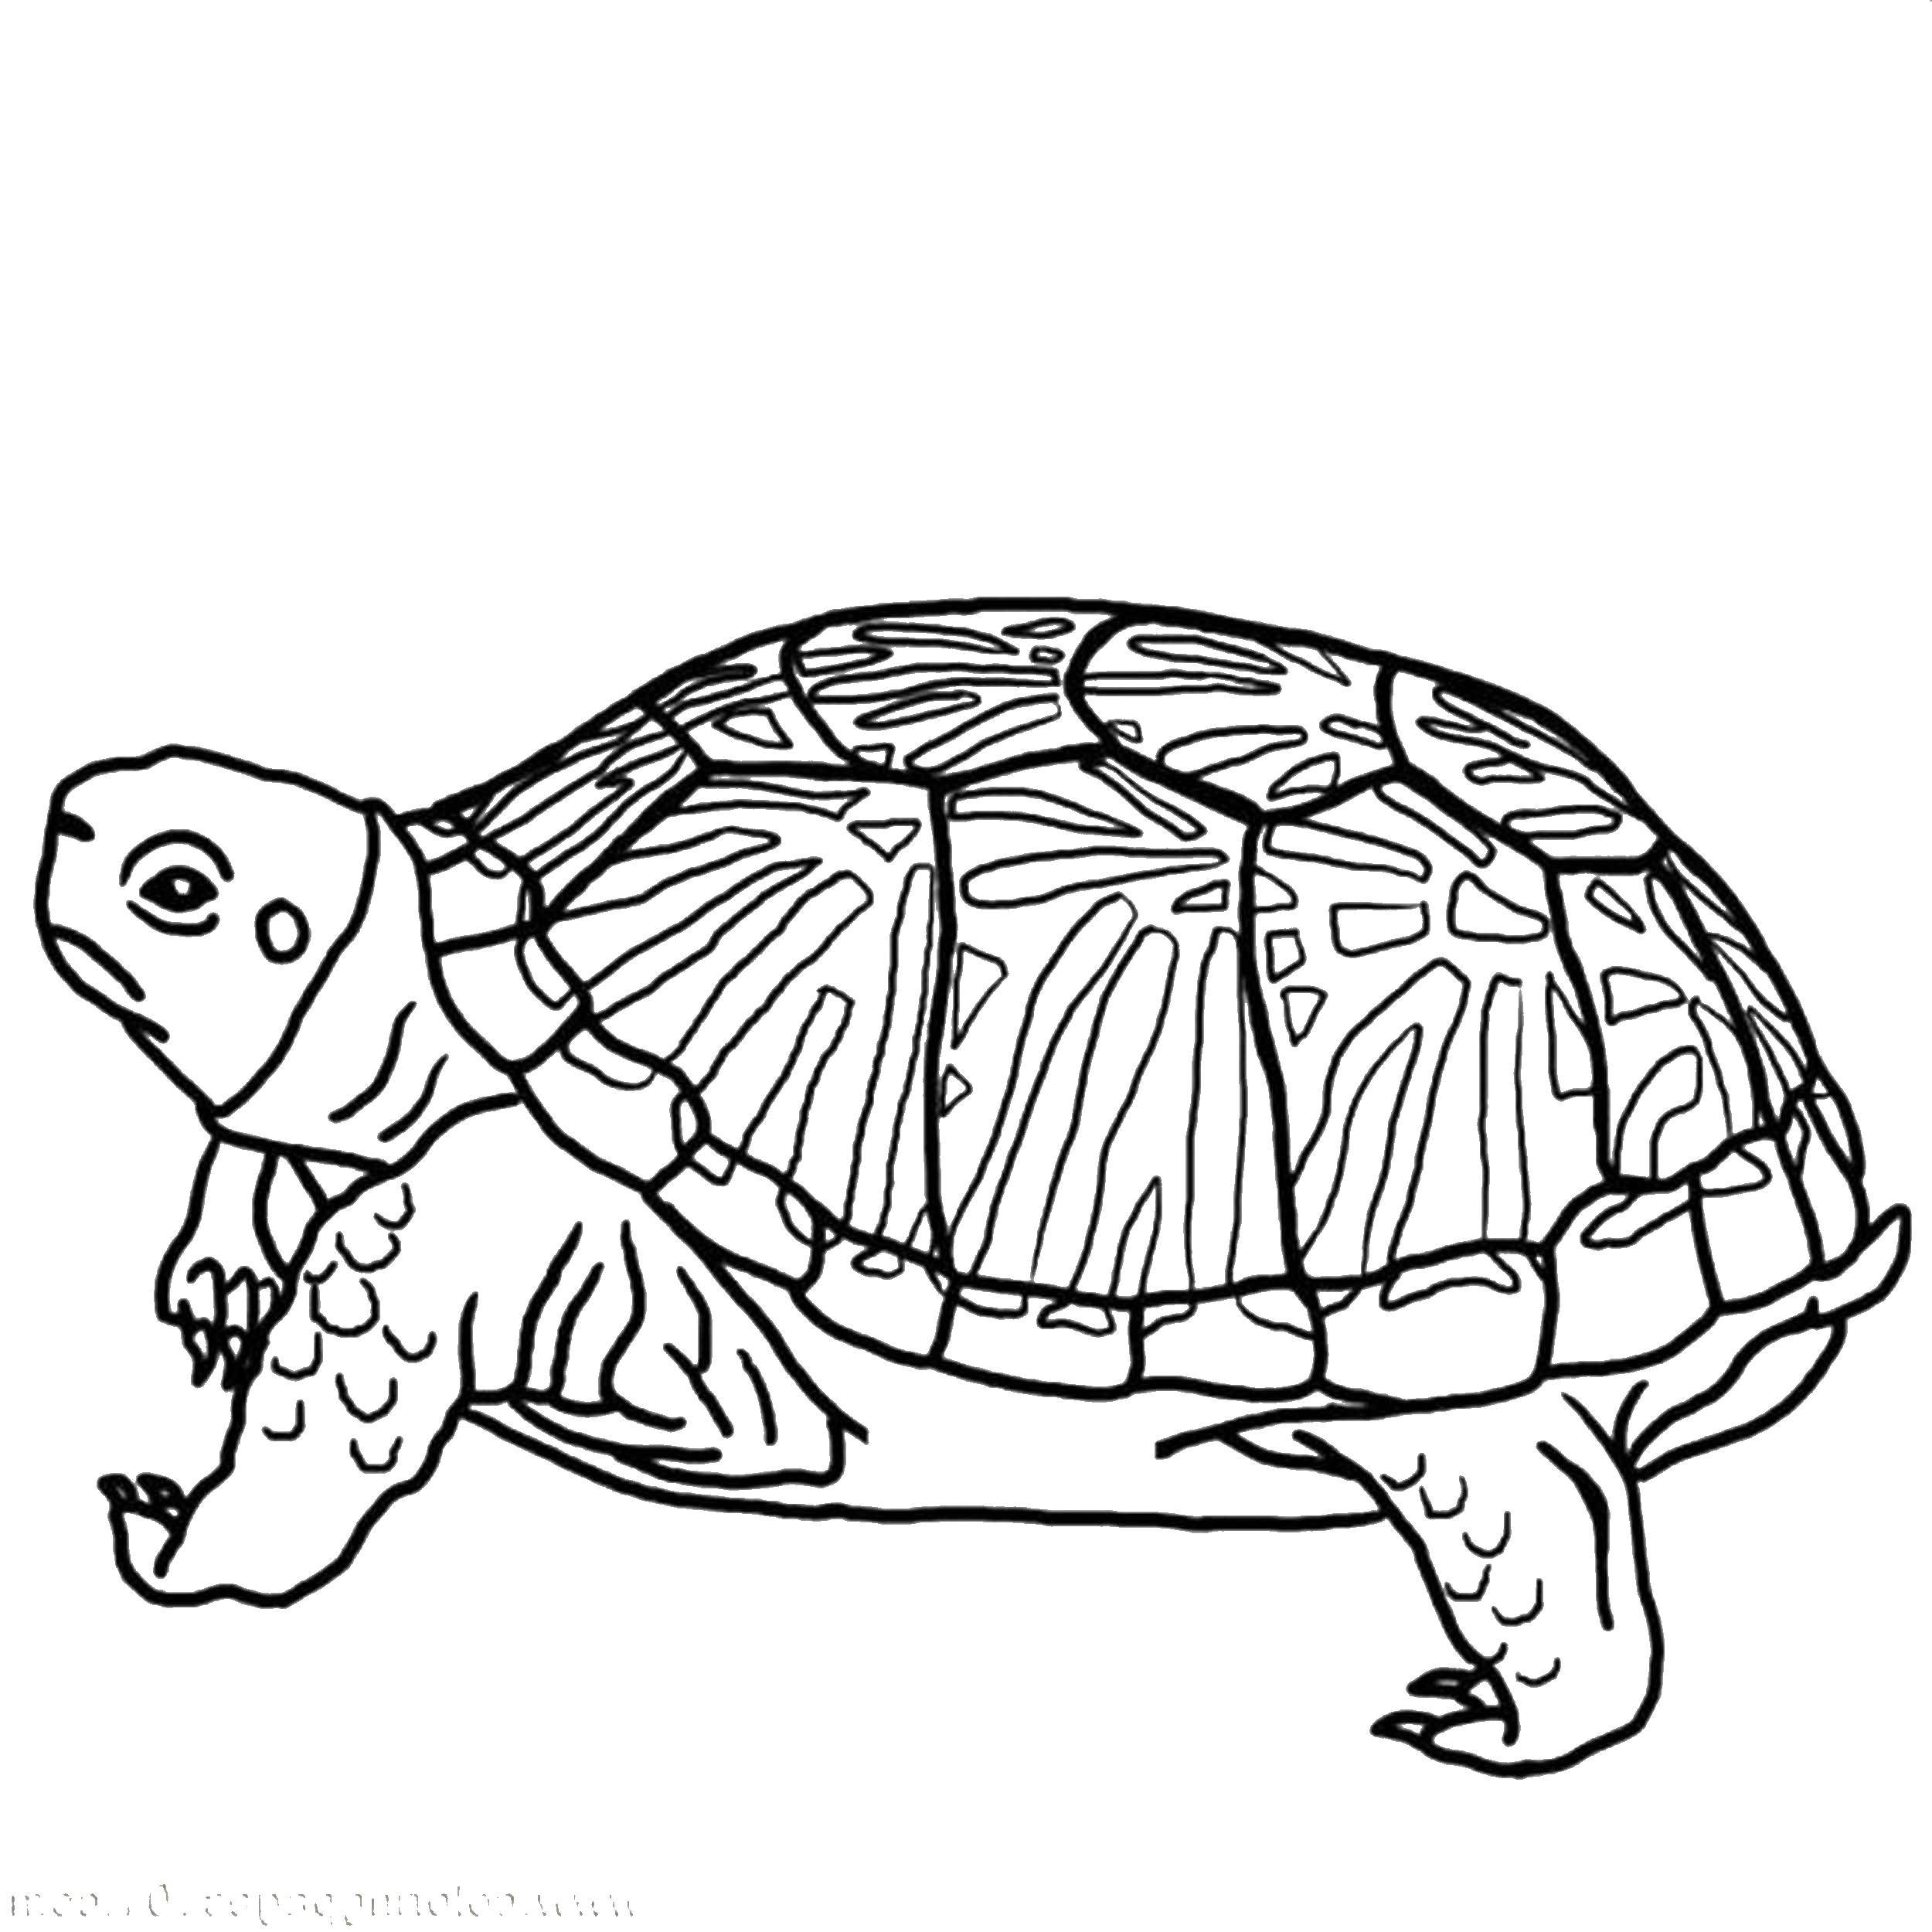 Название: Раскраска Недовольная черепаха. Категория: Животные. Теги: животные, черепаха, панцирь.